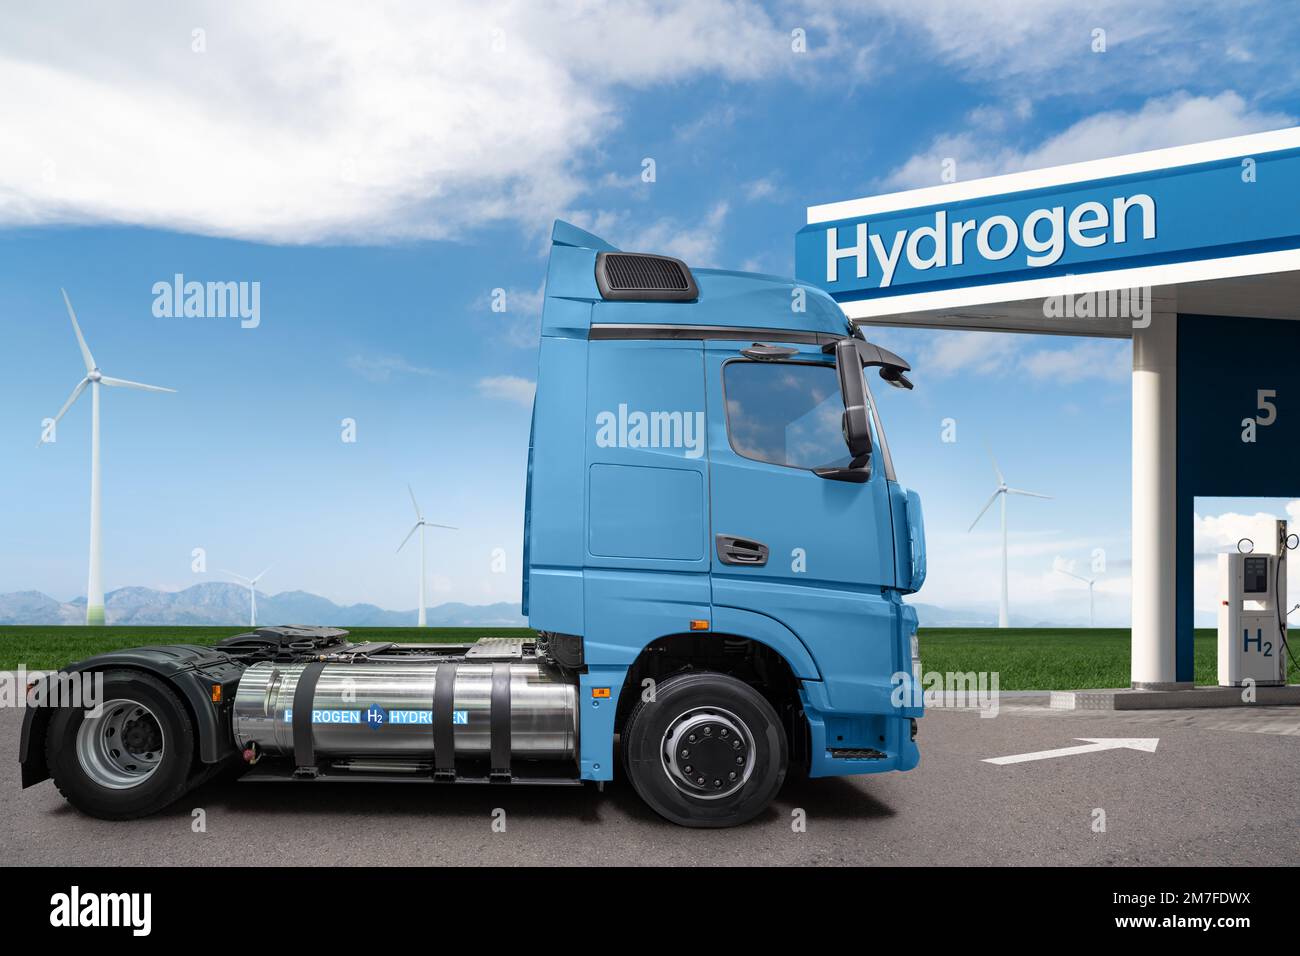 Un semi-camion à pile à hydrogène avec H2 réservoirs de gaz à bord à côté de la station de remplissage. Concept de véhicule commercial respectueux de l'environnement Banque D'Images